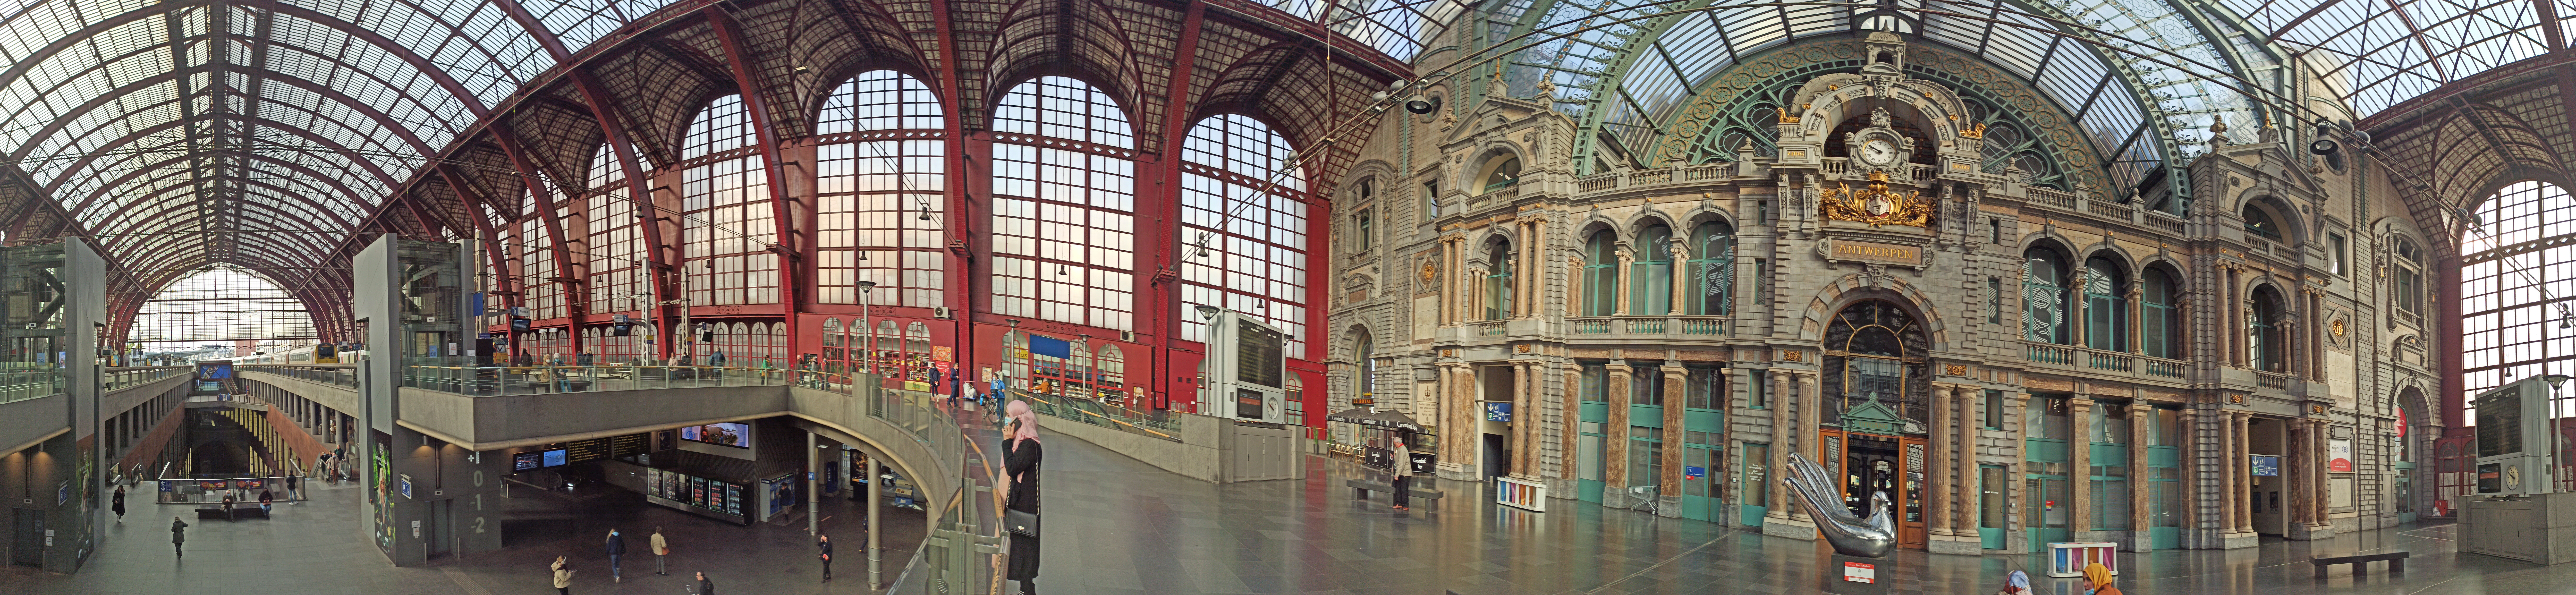 Antwerp Train Station, Belgium, Feburary 2022